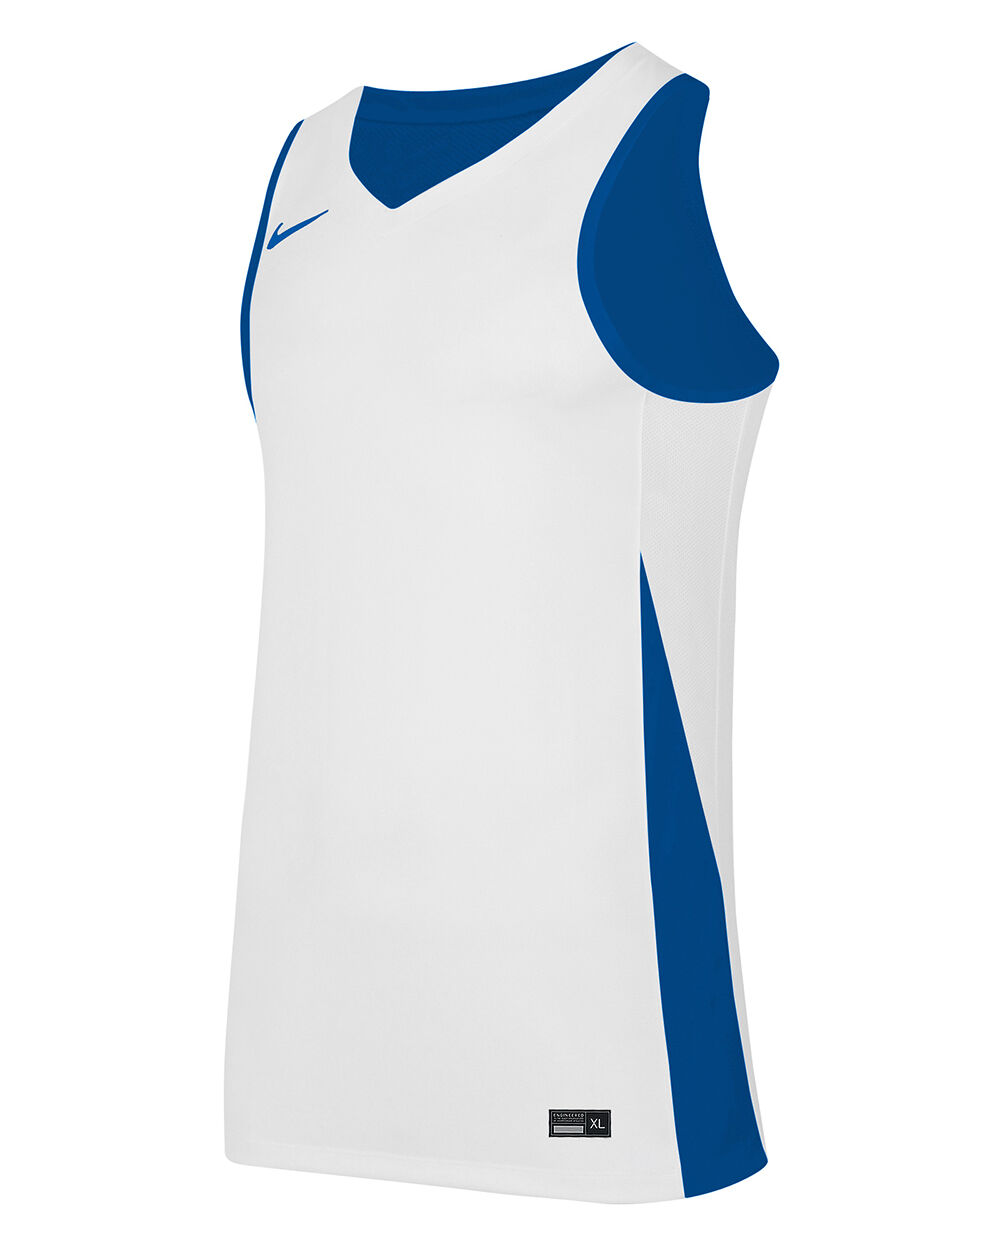 Camiseta de baloncesto reversible Nike Team Azul Real y Blanco Niño - NT0204-463